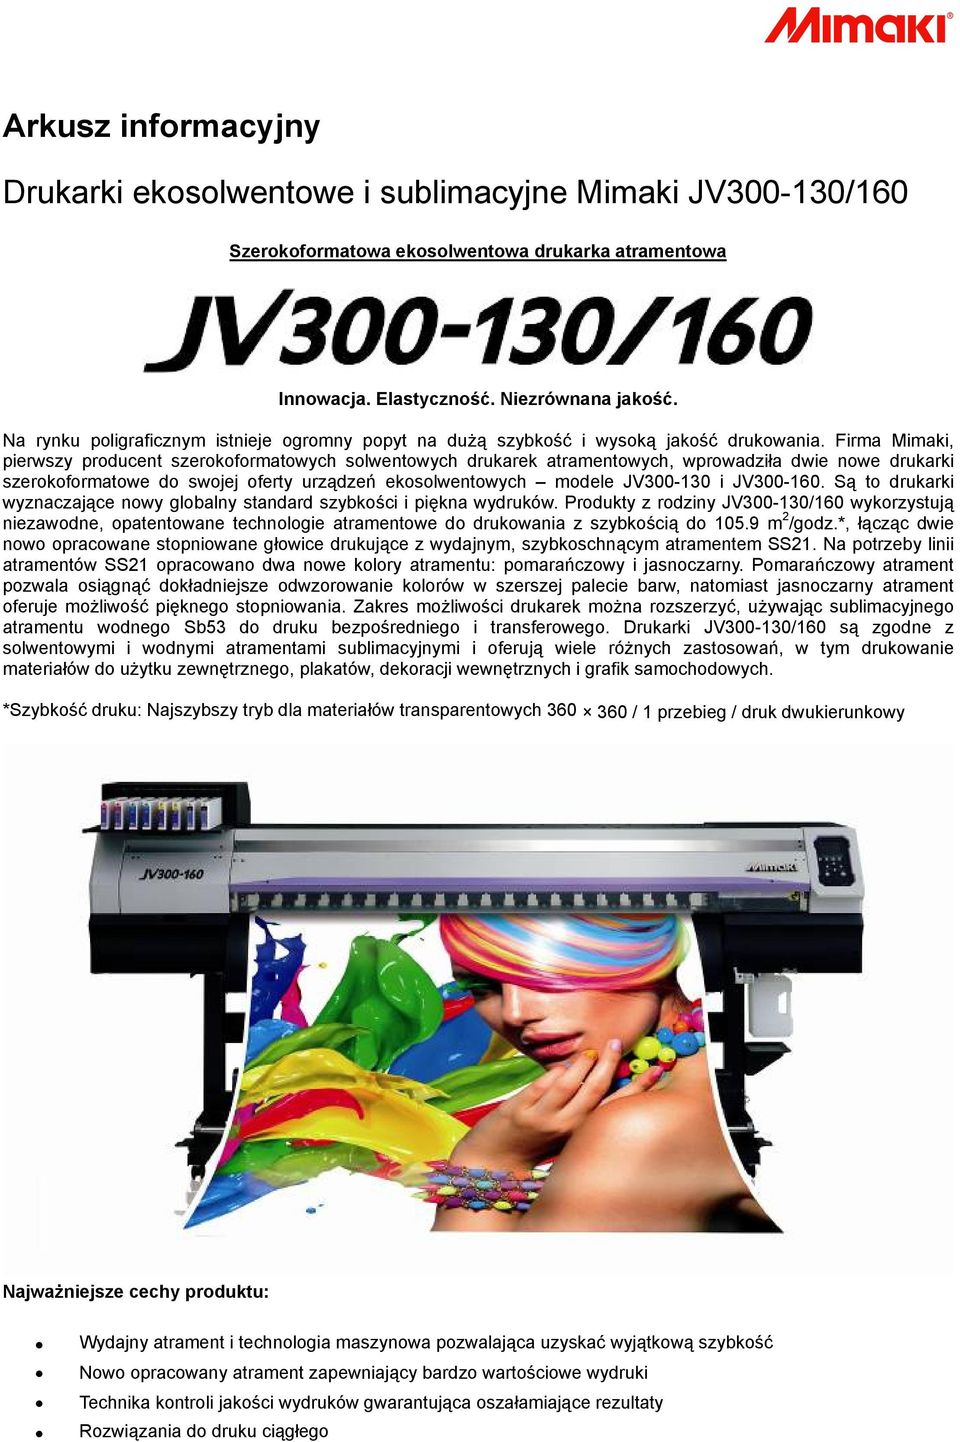 Firma Mimaki, pierwszy producent szerokoformatowych solwentowych drukarek atramentowych, wprowadziła dwie nowe drukarki szerokoformatowe do swojej oferty urządzeń ekosolwentowych modele JV300-130 i